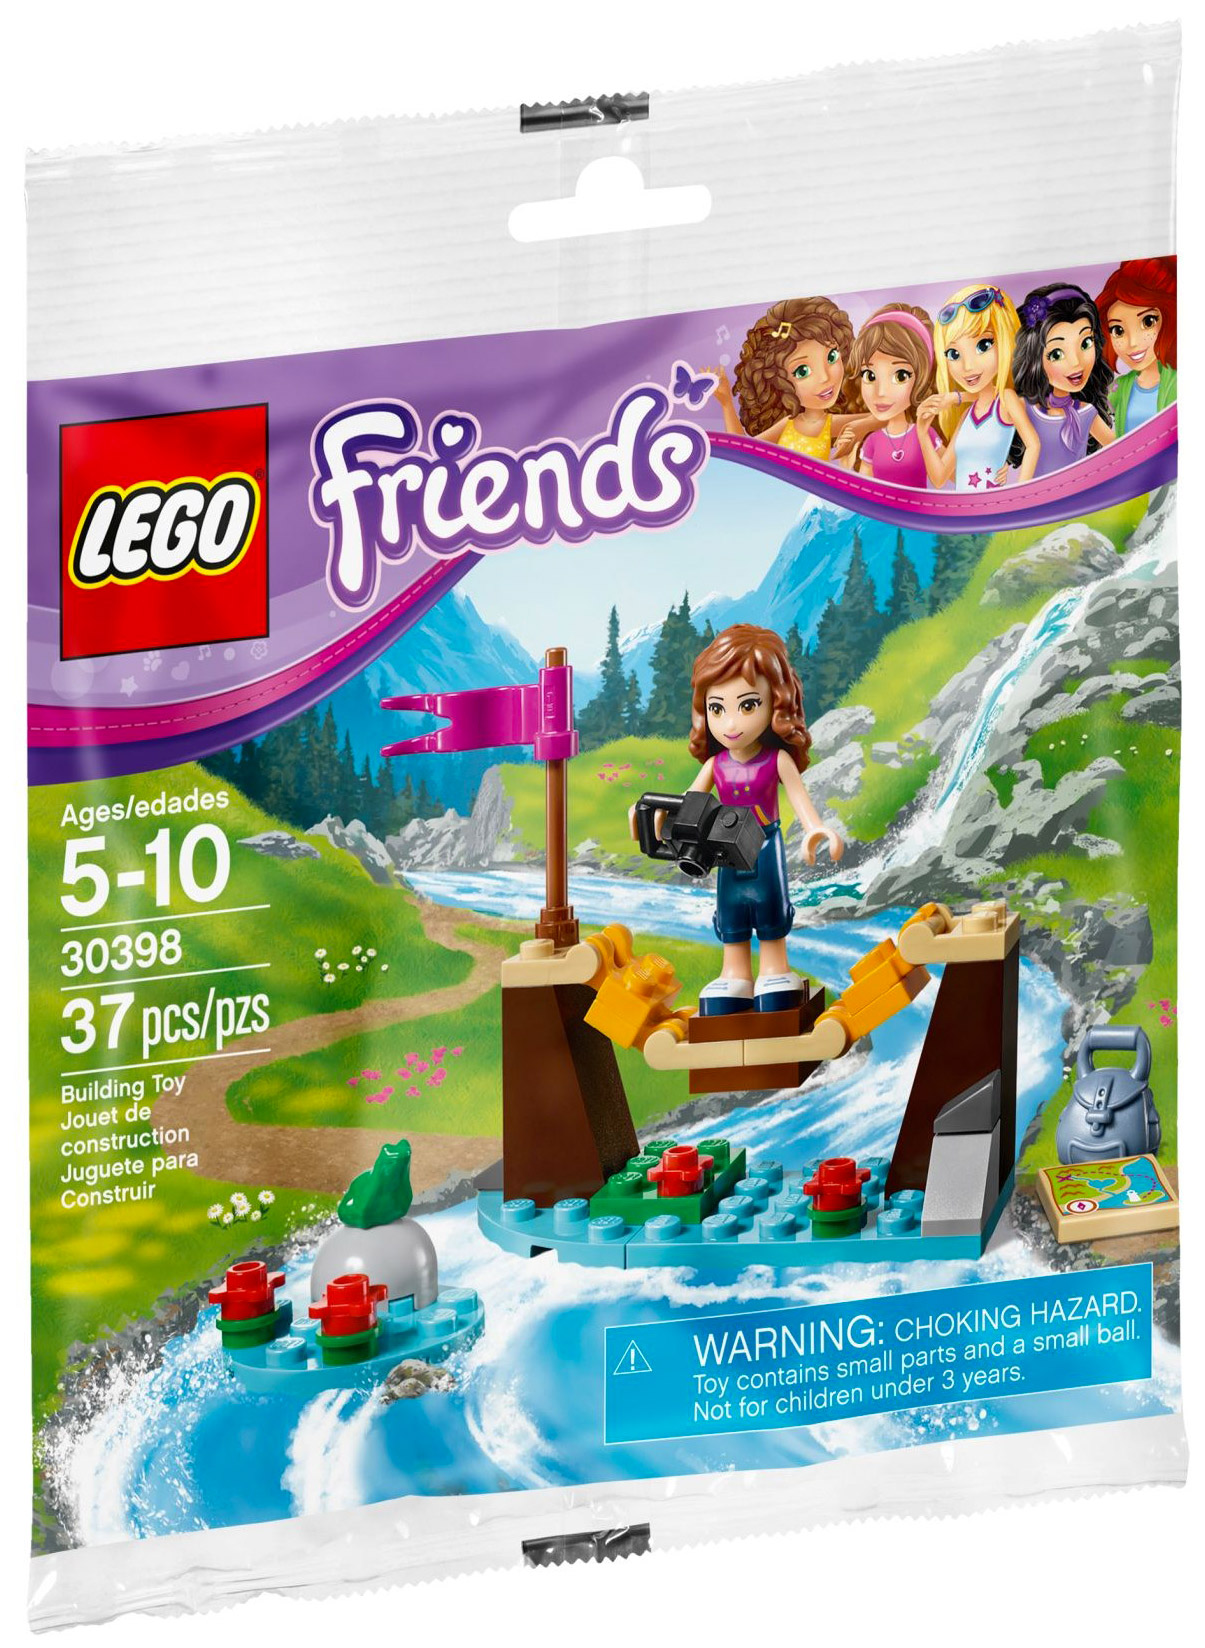 LEGO Friends 41135 pas cher, La maison de la Pop Star Livi